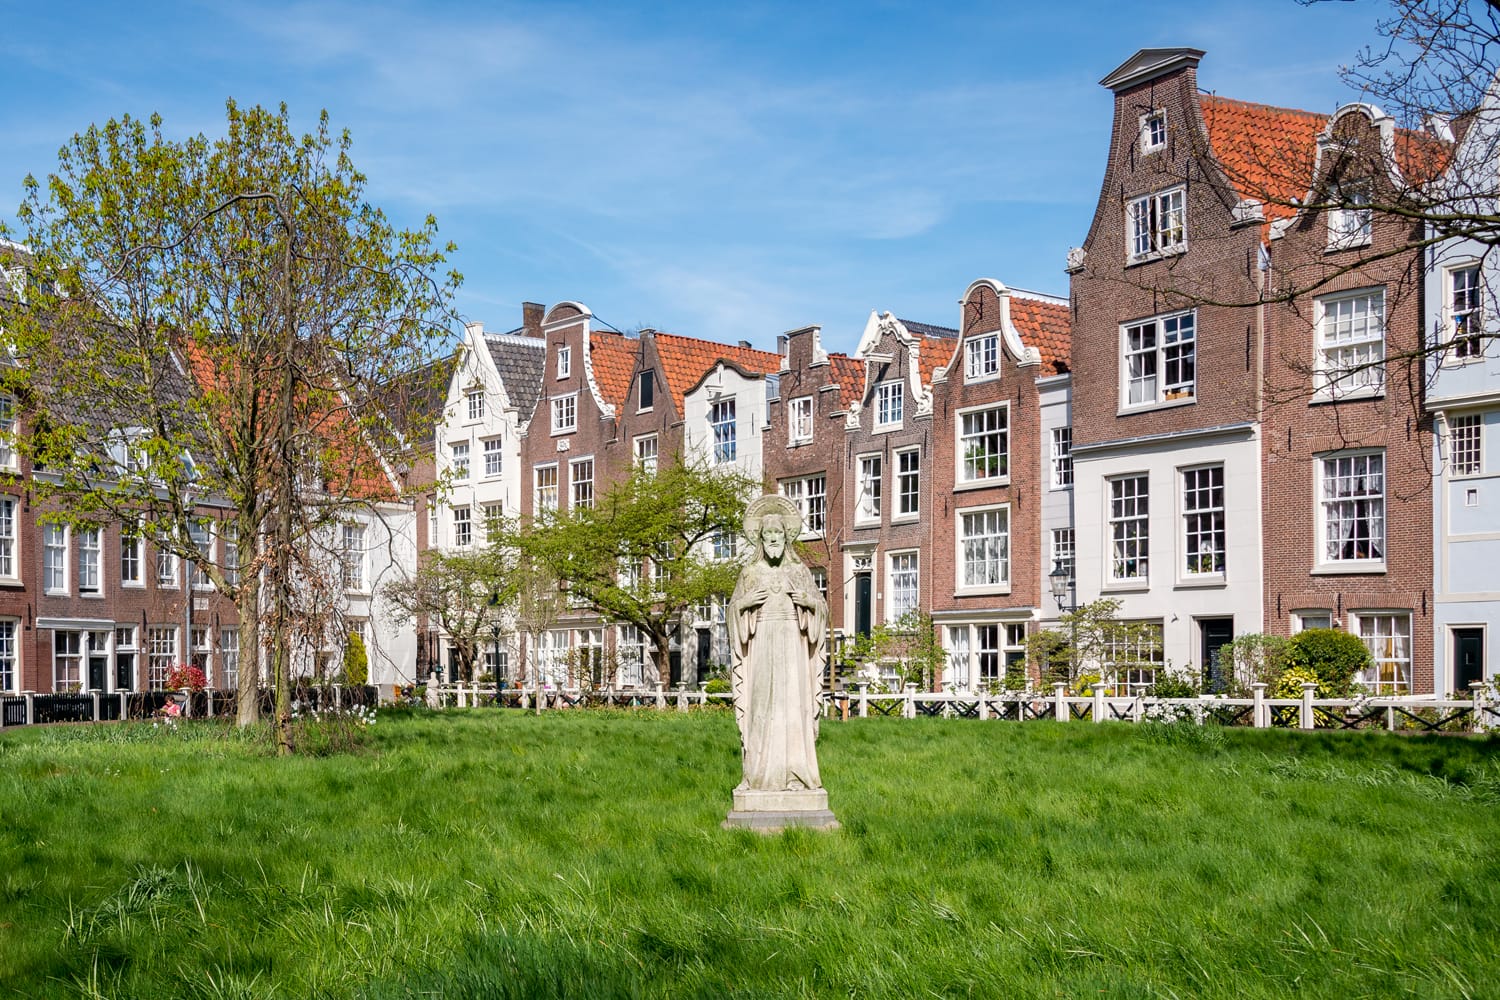 Grounds of the Begijnhof Ursuline convent in Amsterdam, Netherlands